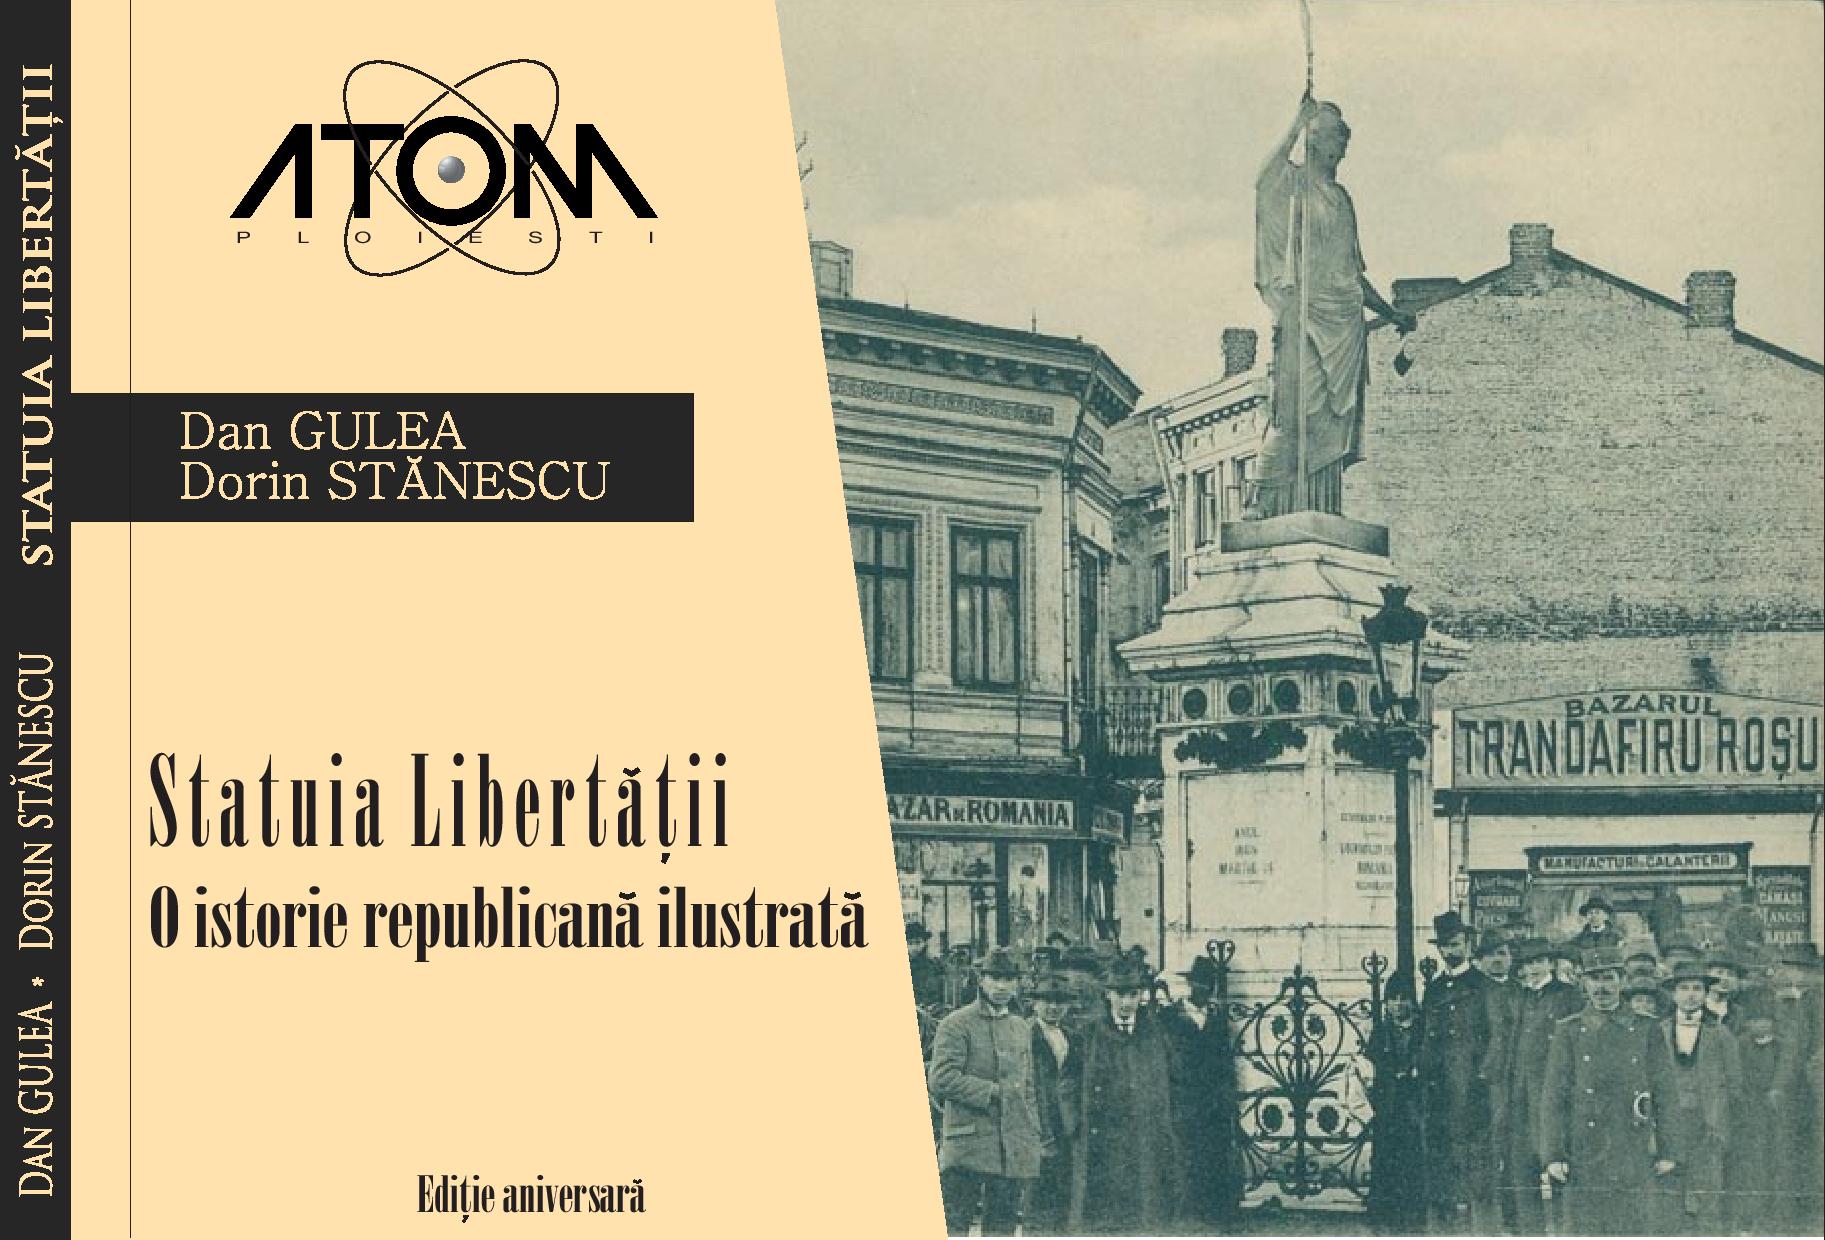 Statuia Libertatii – O istorie Republicana Ilustrata | Dan Gulea, Dorin Stanescu ATOM